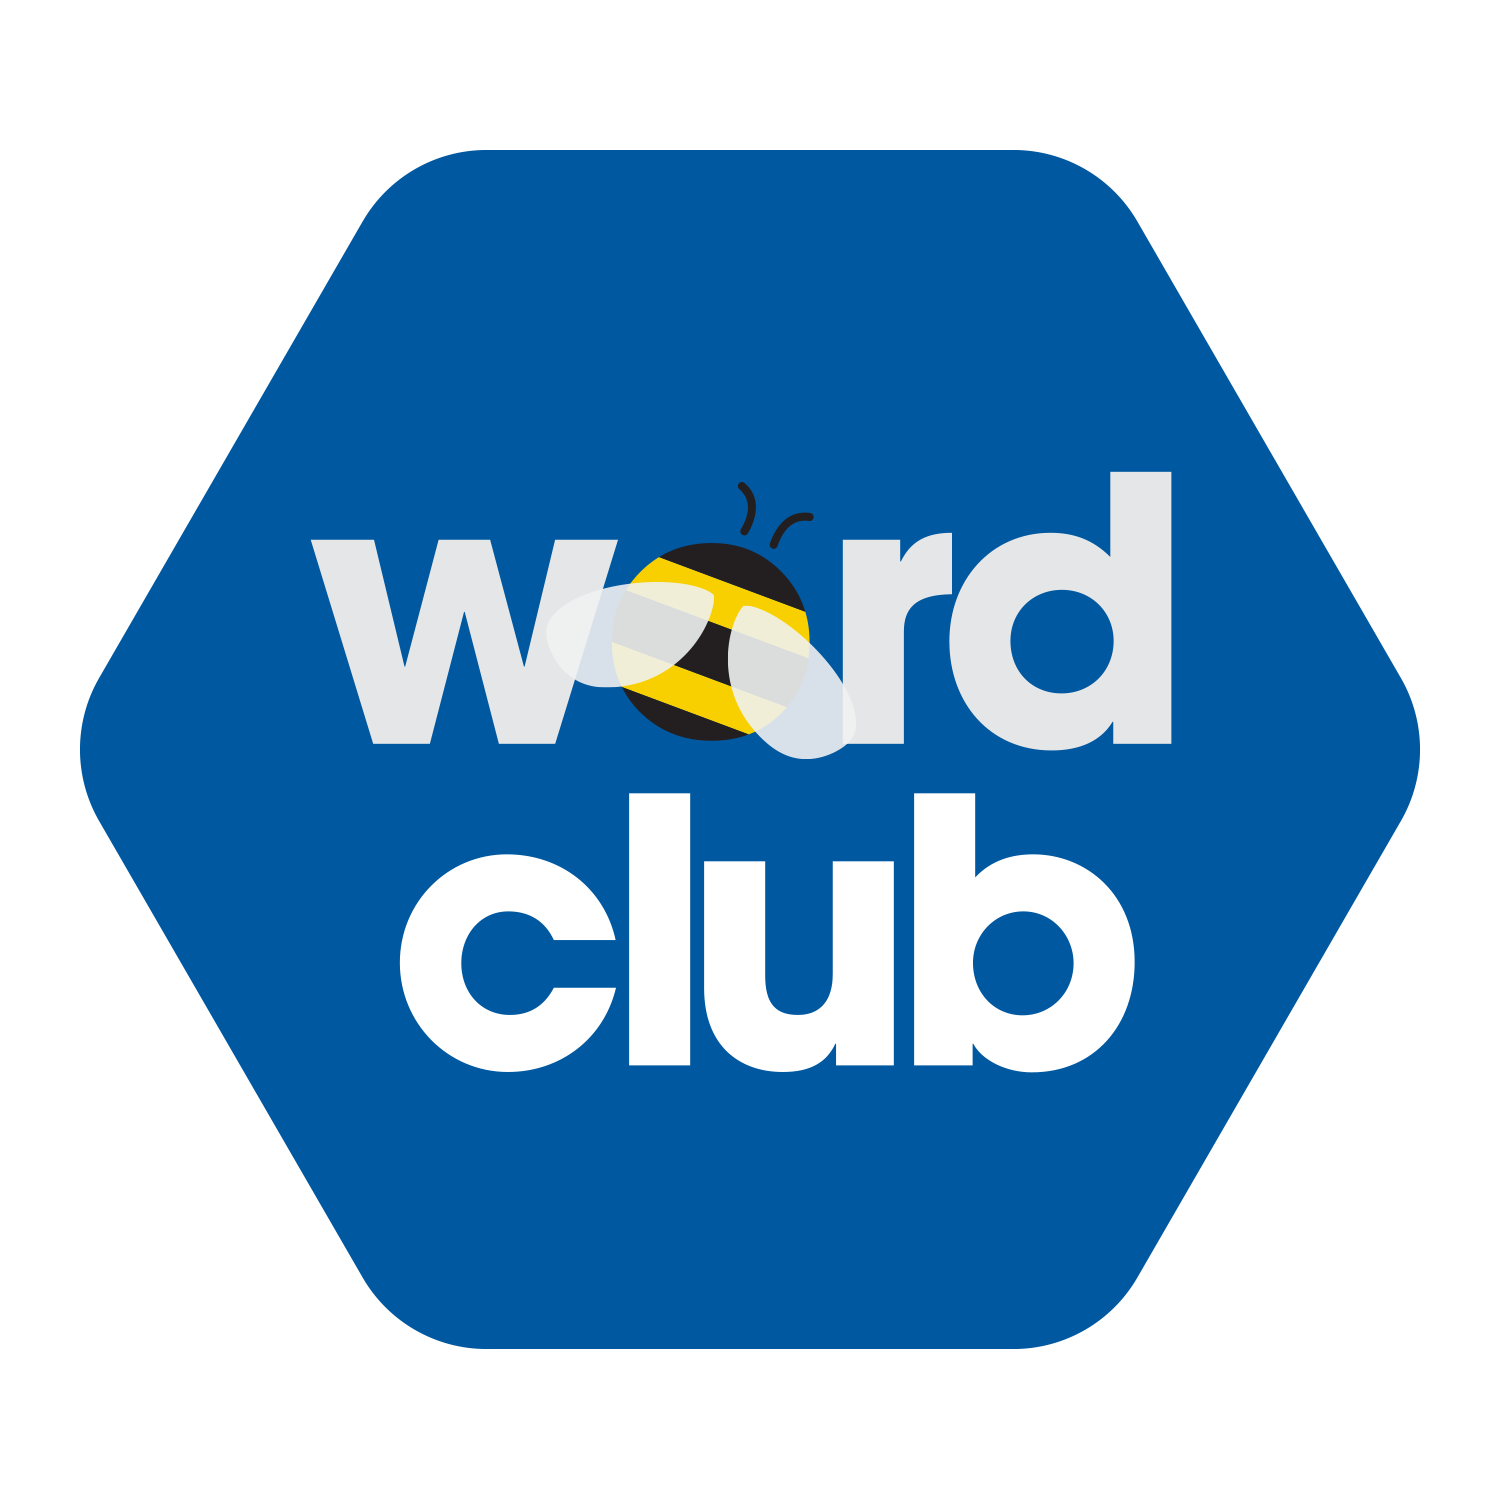 Word Club logo